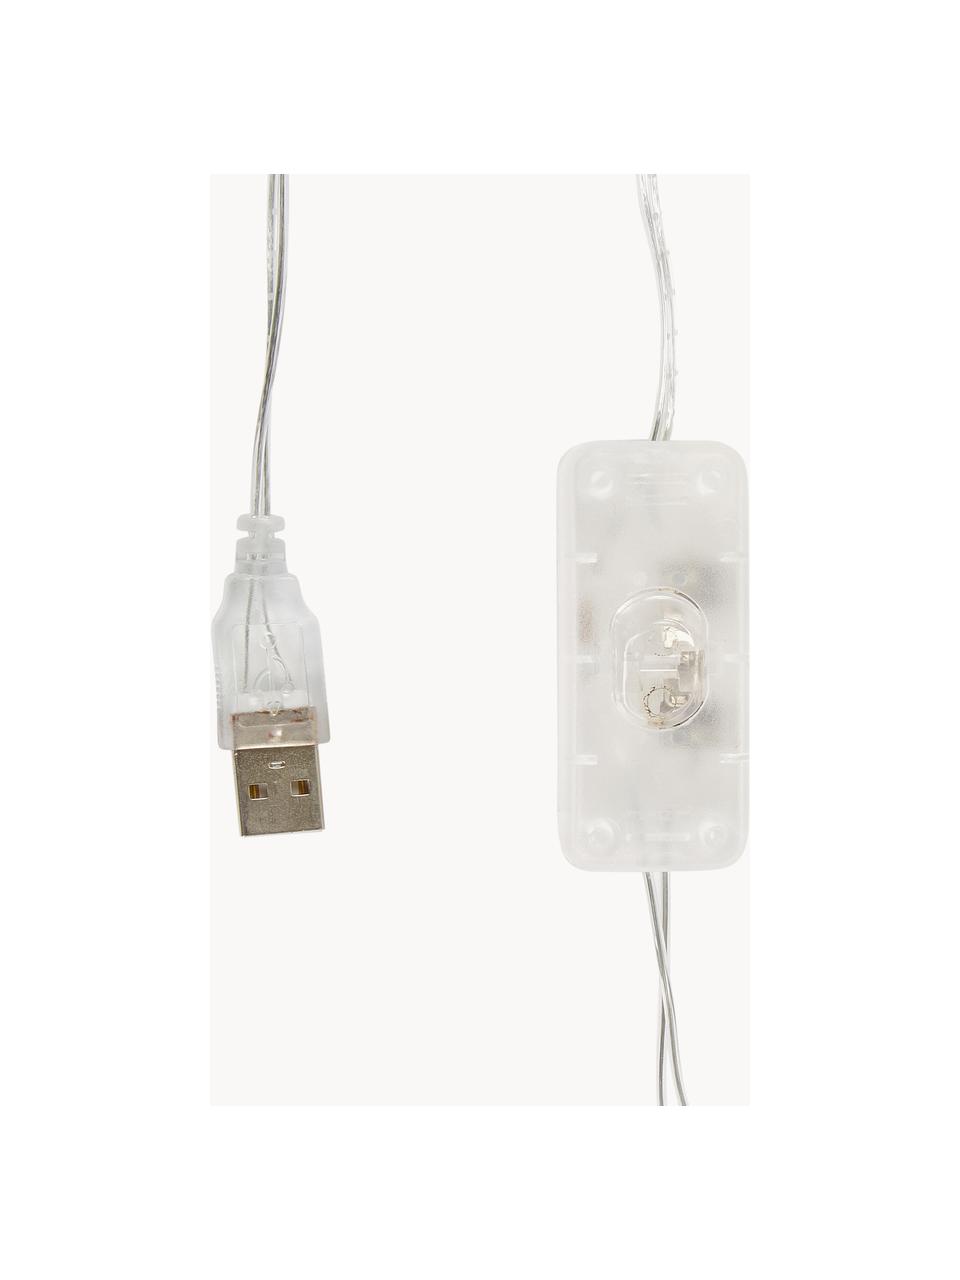 Guirnalda de luces LED Colorain, 378 cm, Linternas: poliéster, Cable: plástico, Tonos lila, blanco, L 378 cm